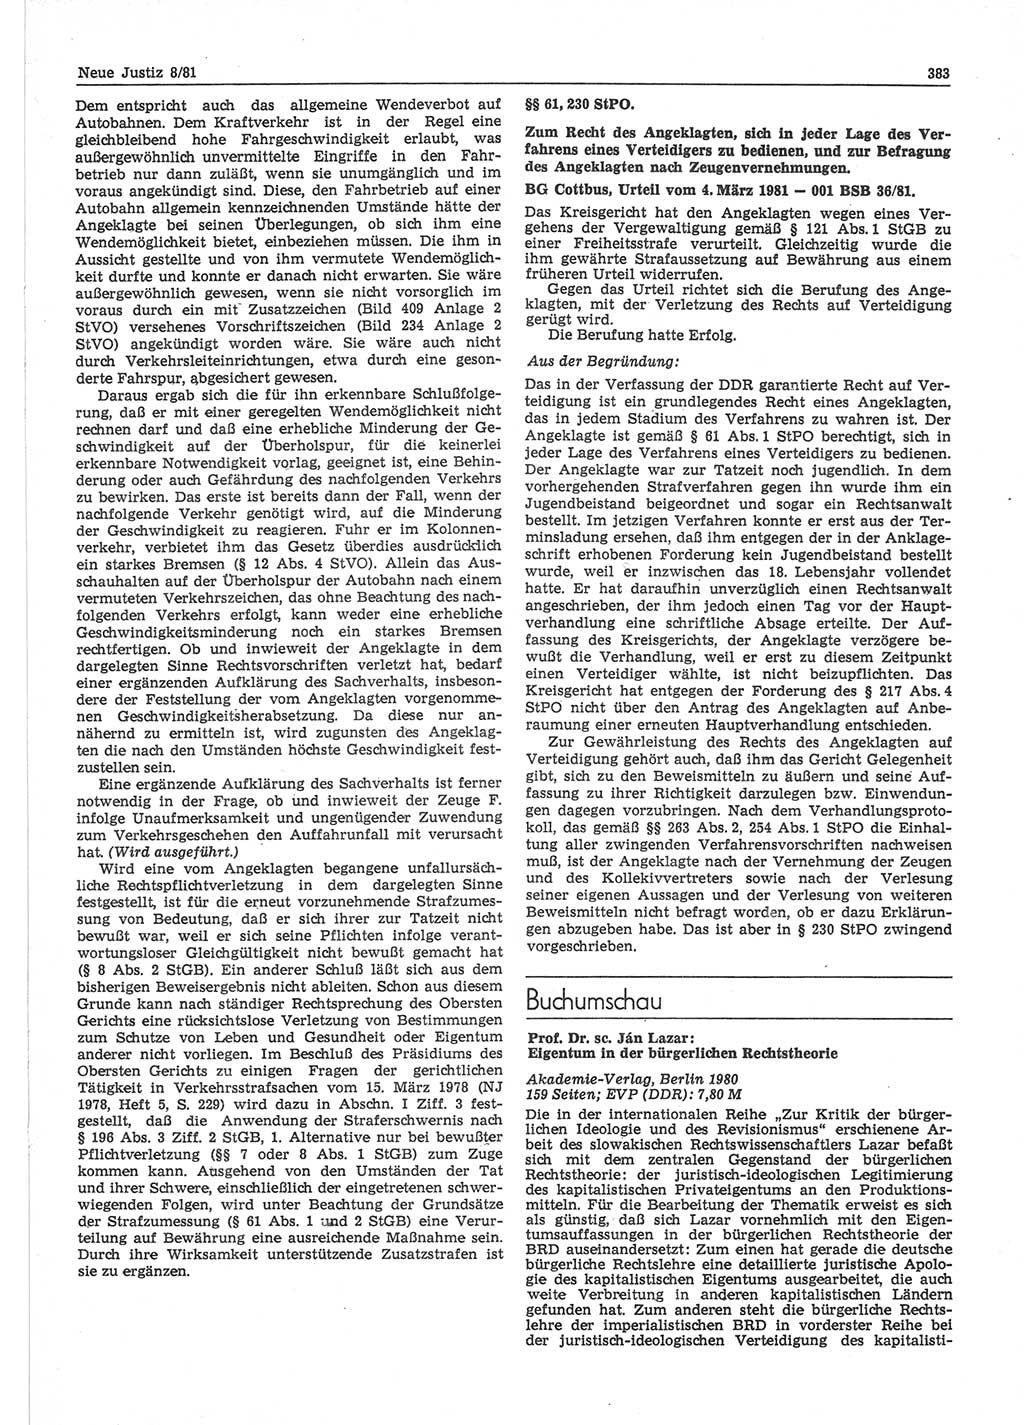 Neue Justiz (NJ), Zeitschrift für sozialistisches Recht und Gesetzlichkeit [Deutsche Demokratische Republik (DDR)], 35. Jahrgang 1981, Seite 383 (NJ DDR 1981, S. 383)